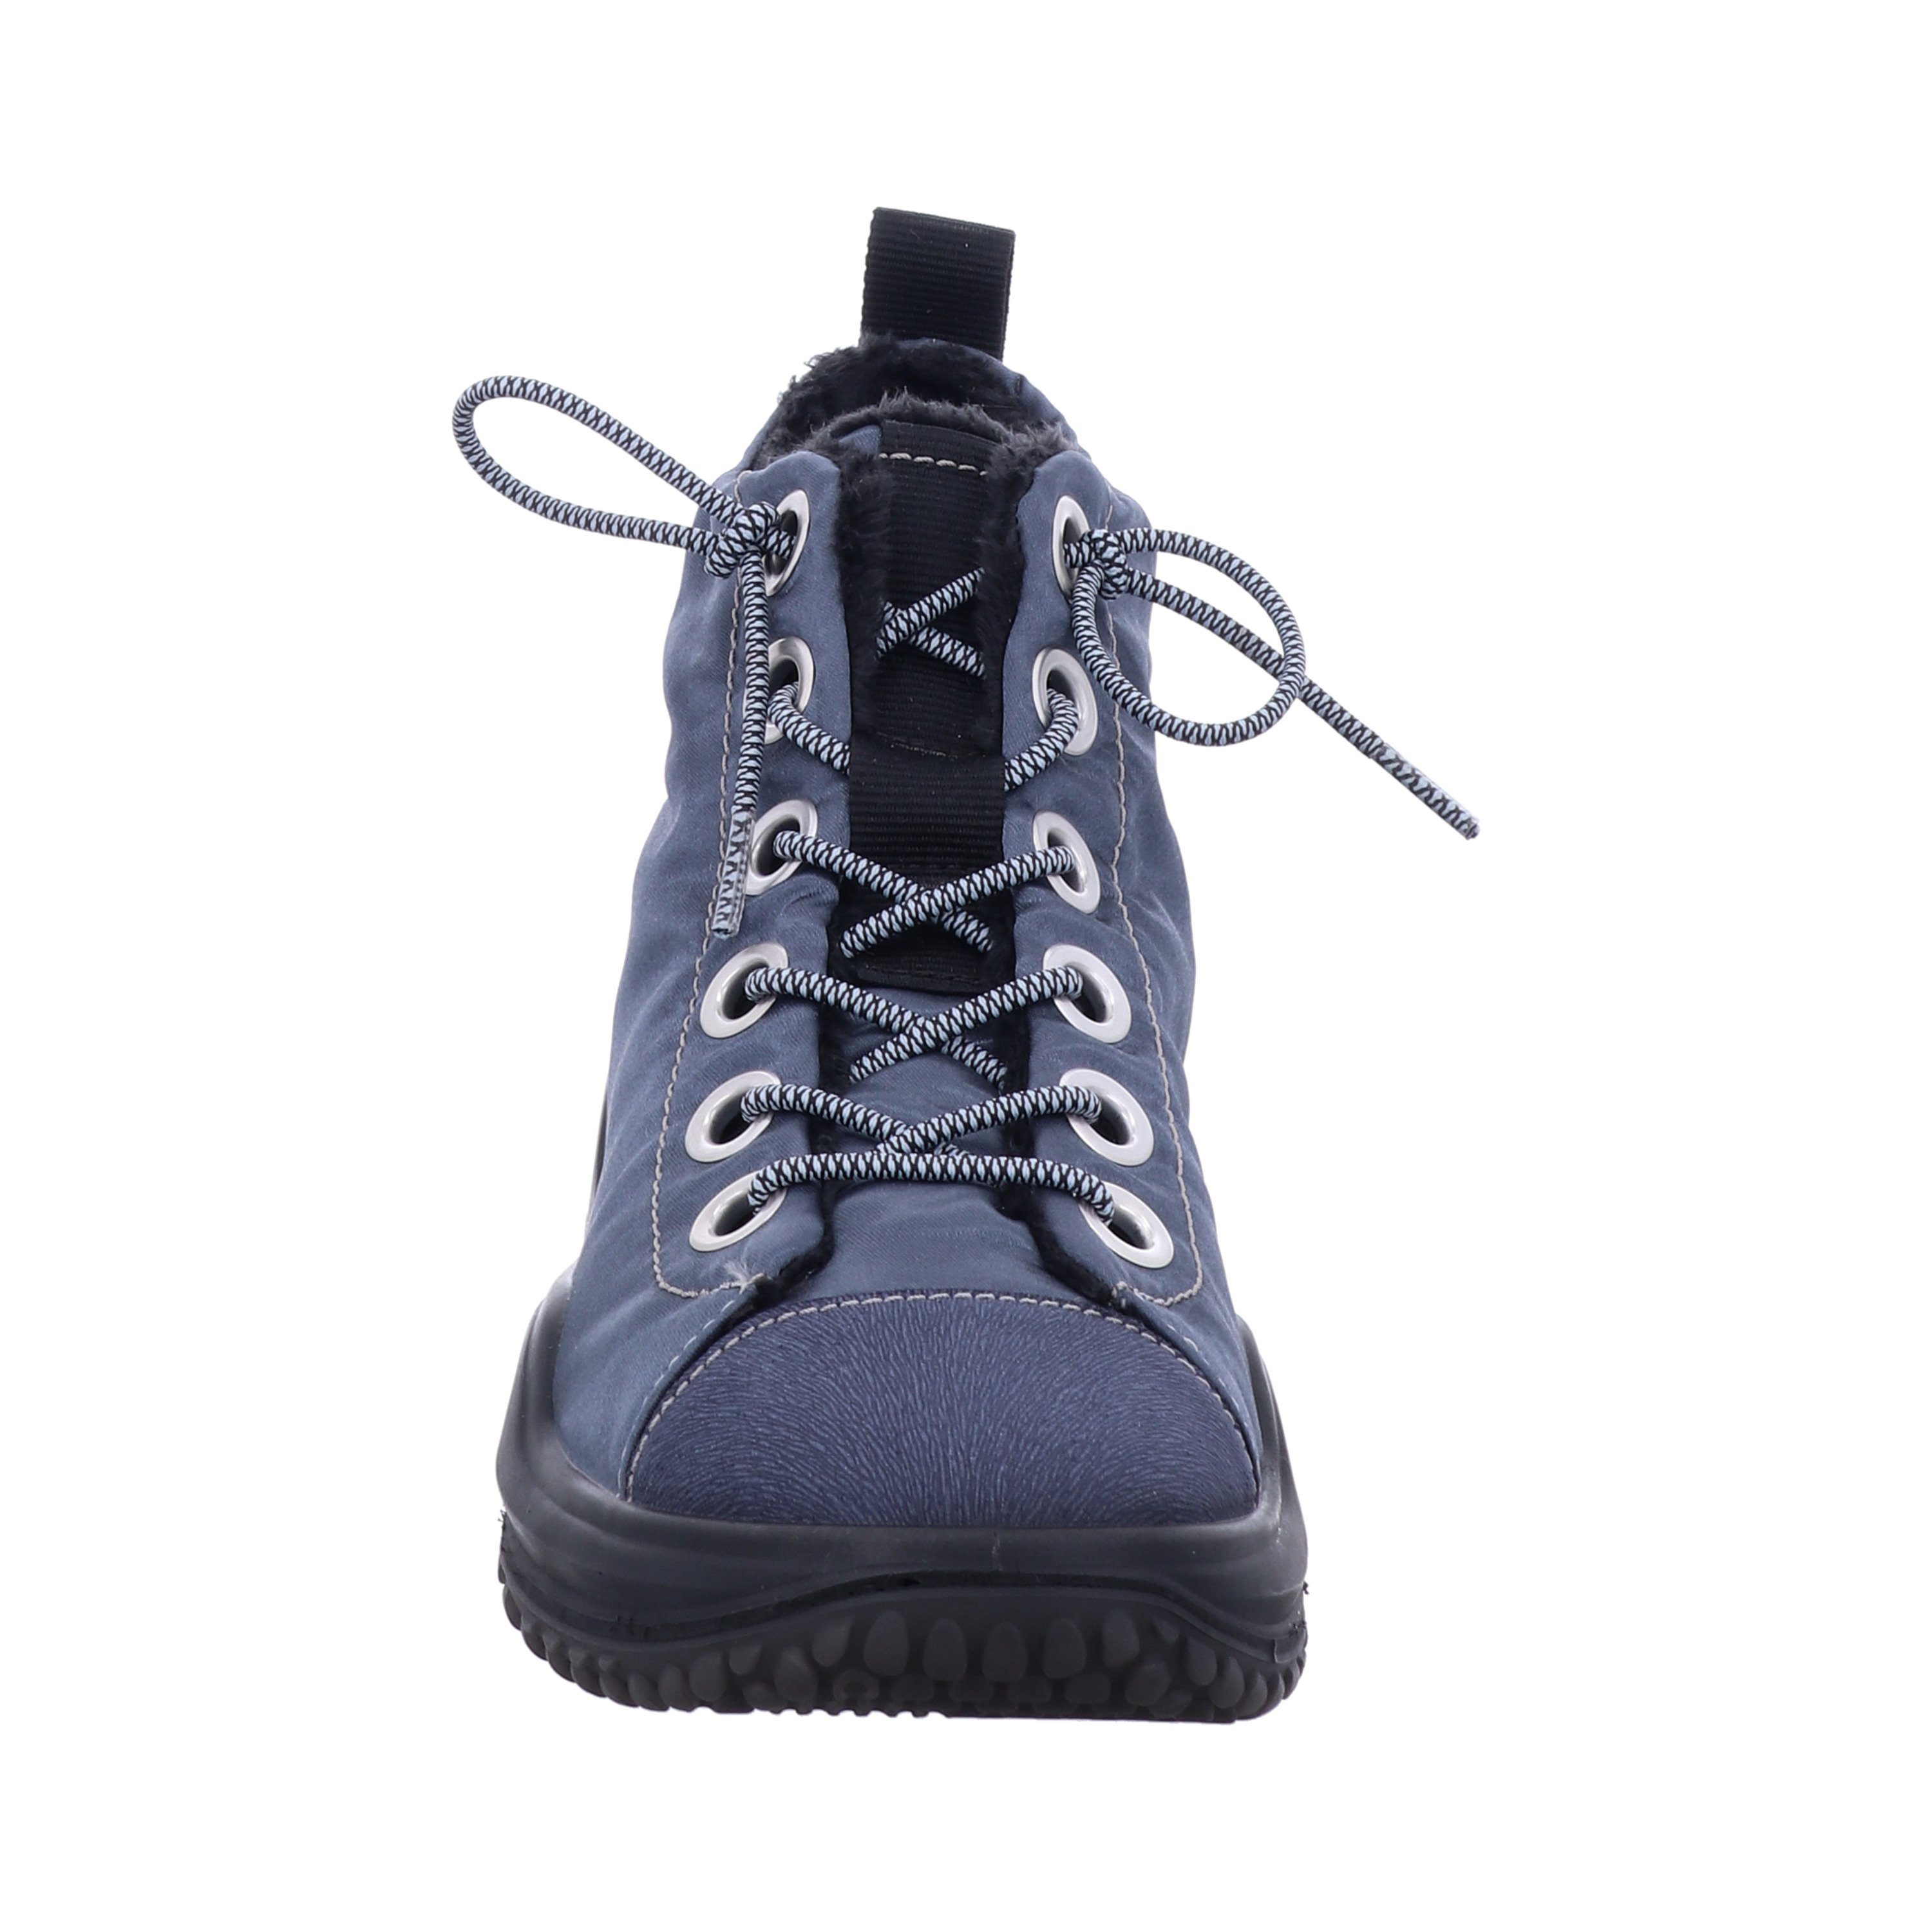 Schuhe Stiefeletten Westland Marla W17, dunkelblau Stiefelette